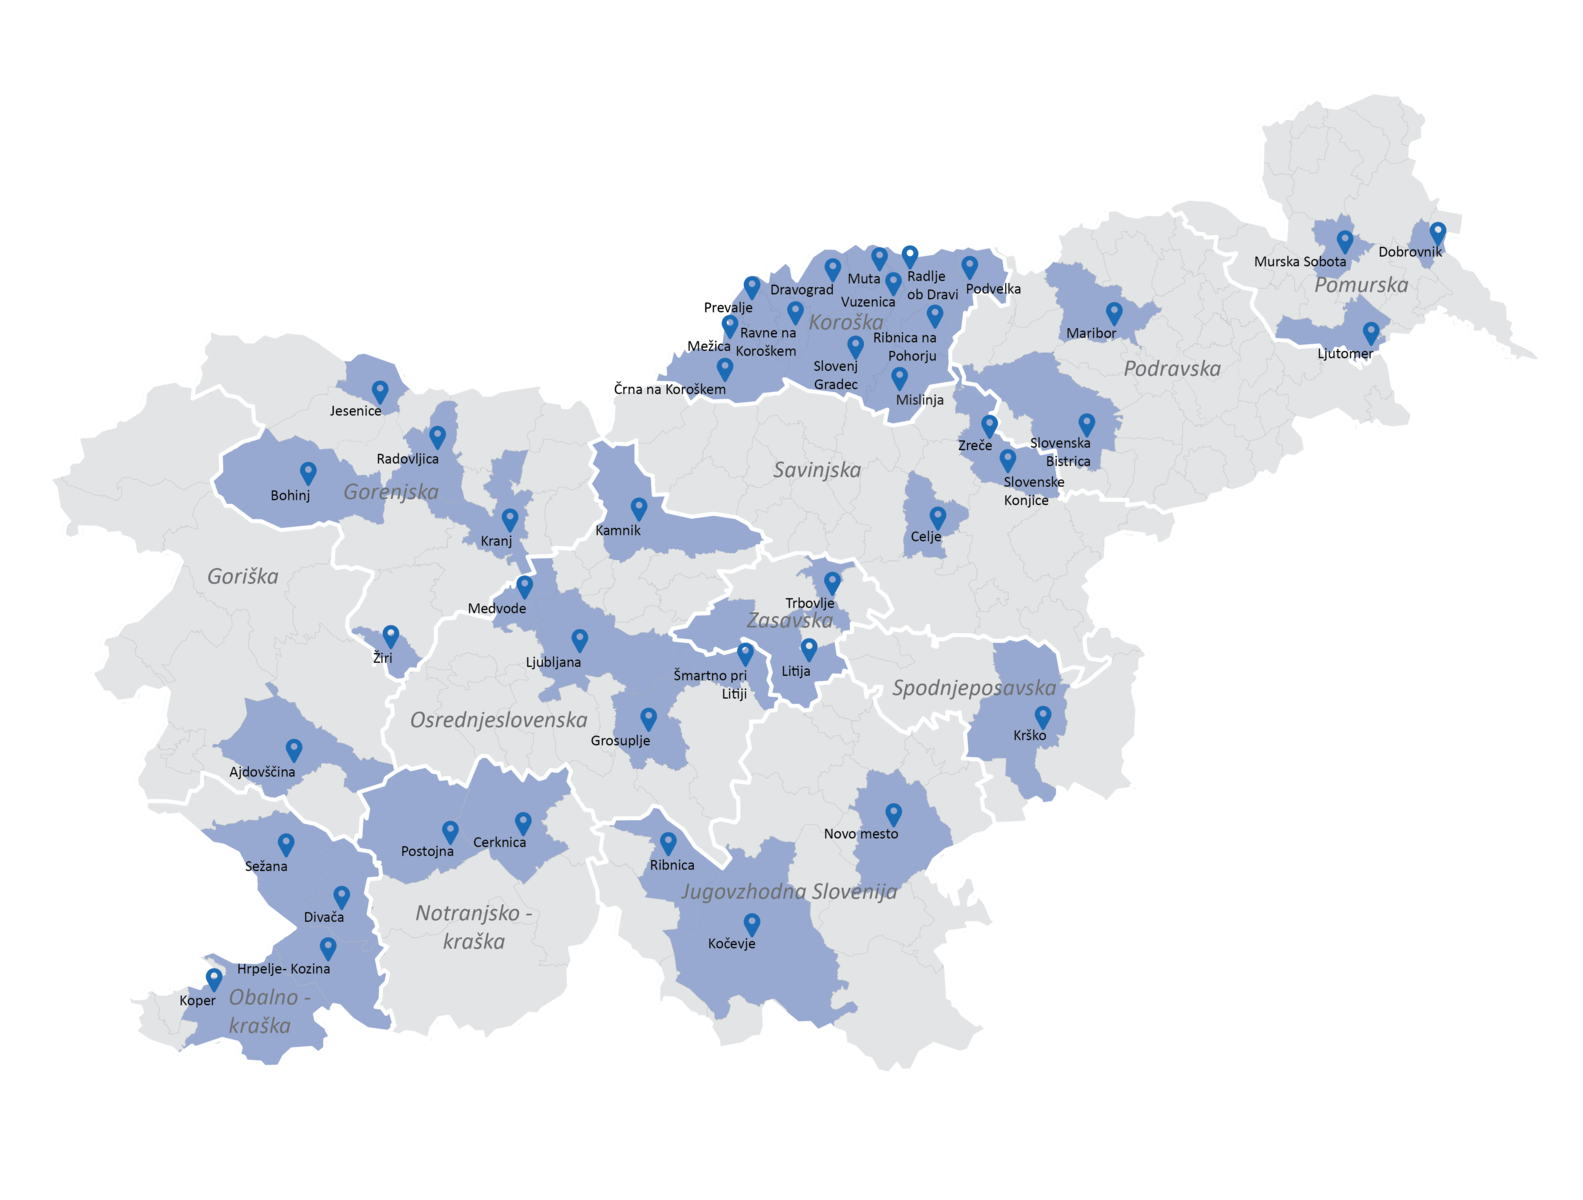 Prikaz v projekt vključenih občin na zemljevidu Slovenije